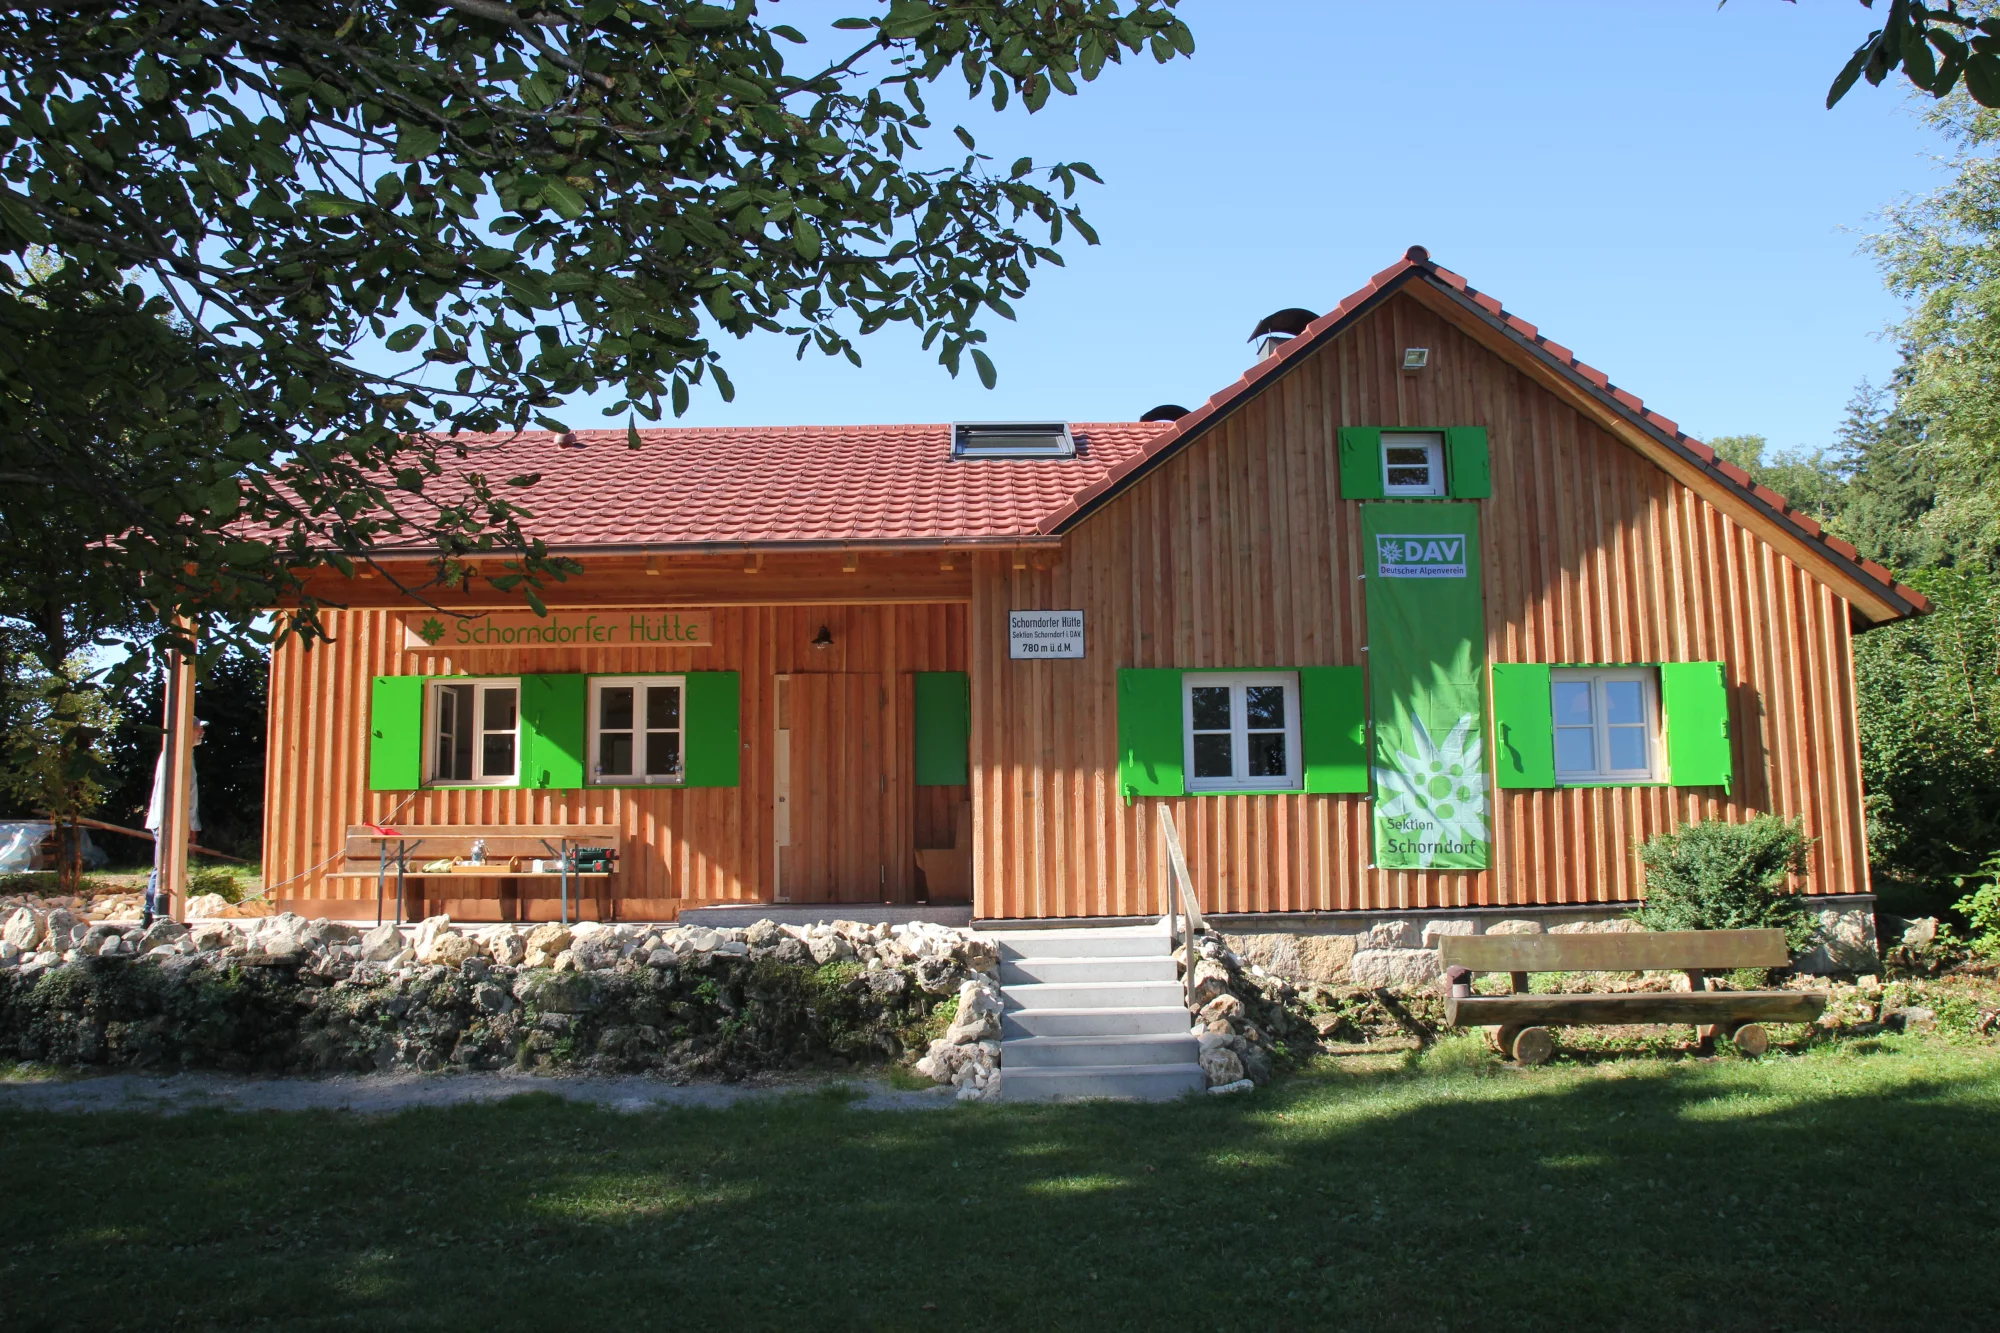 Schorndorfer Hütte